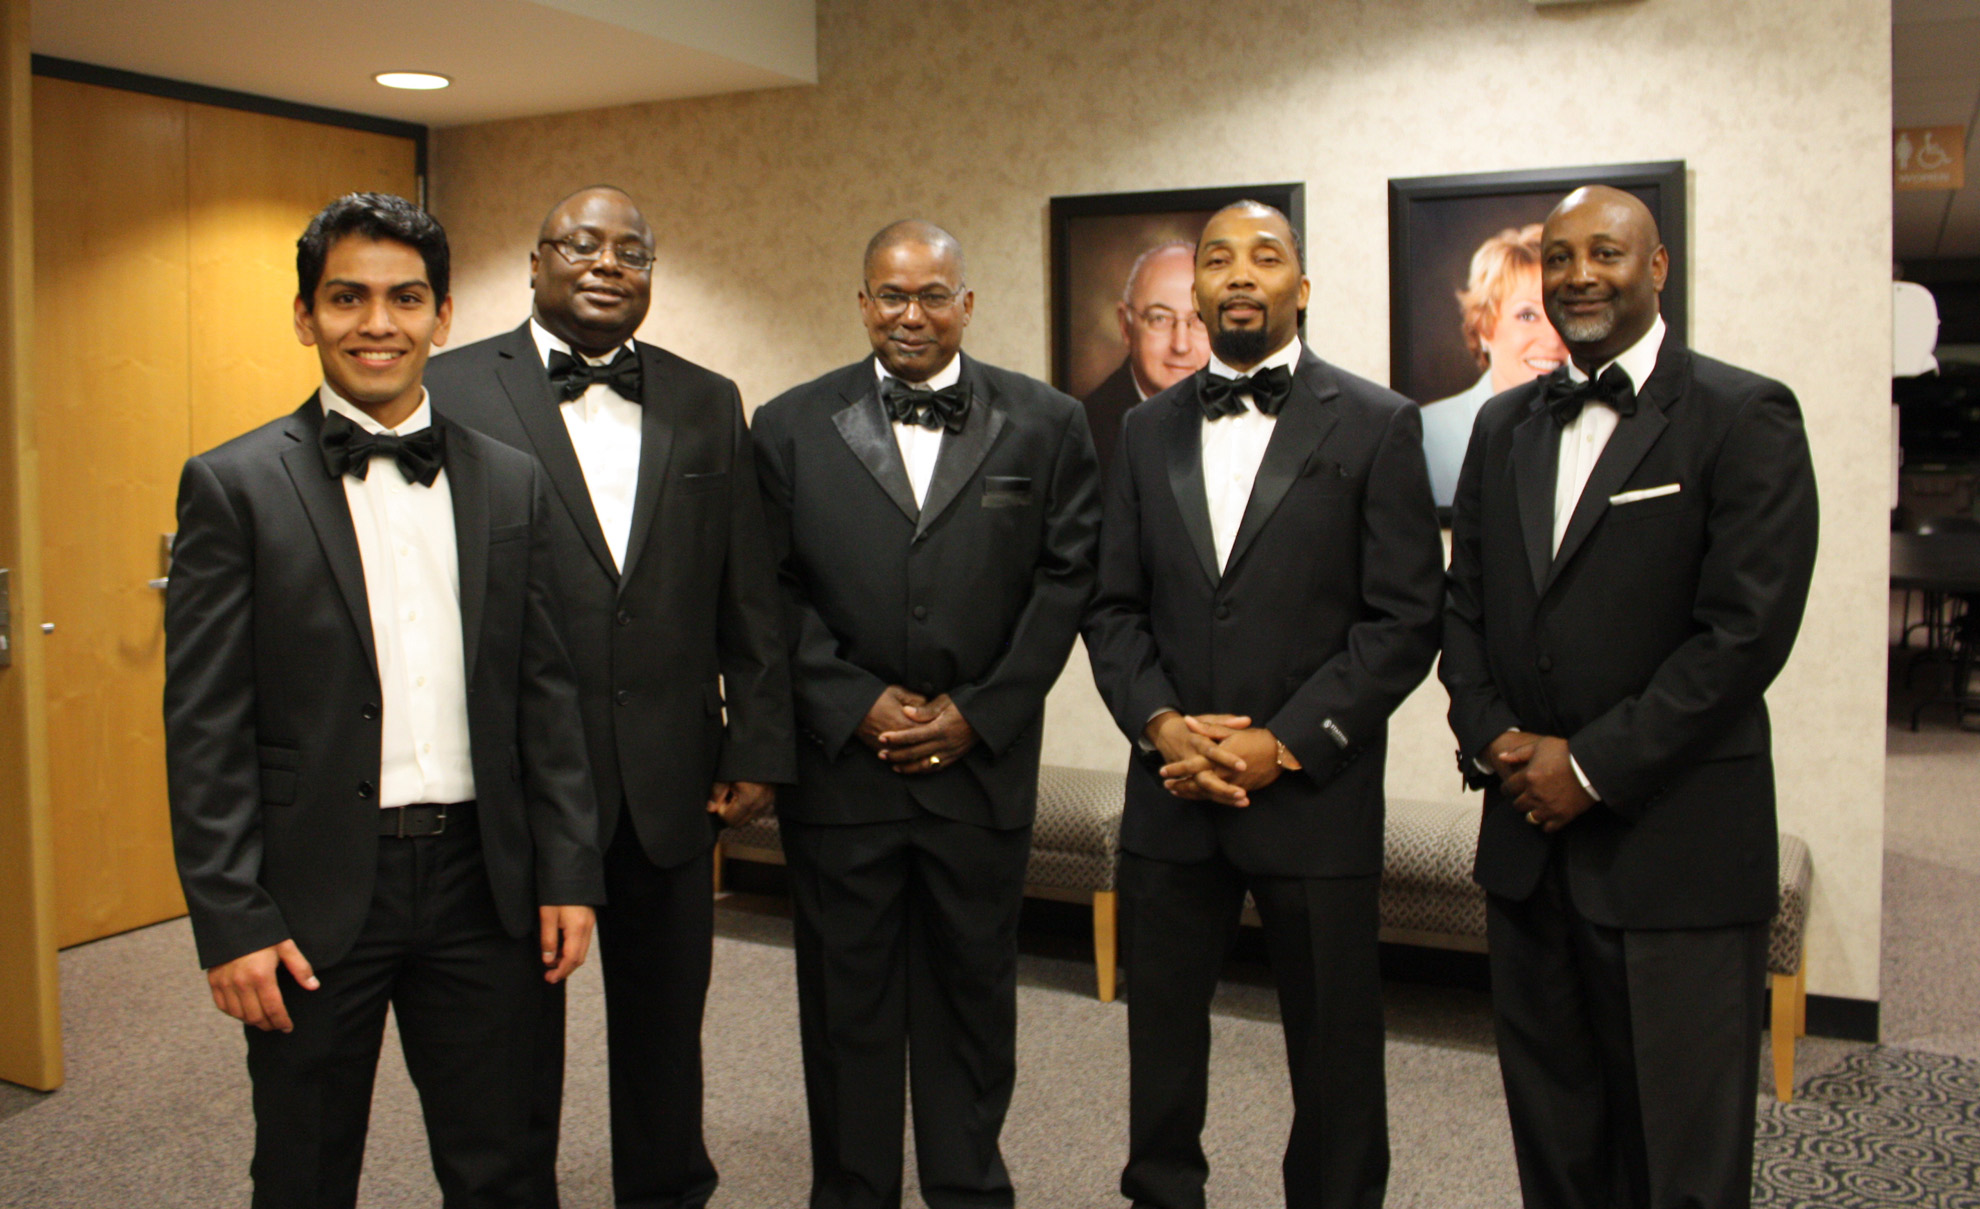 Five men in tuxedos